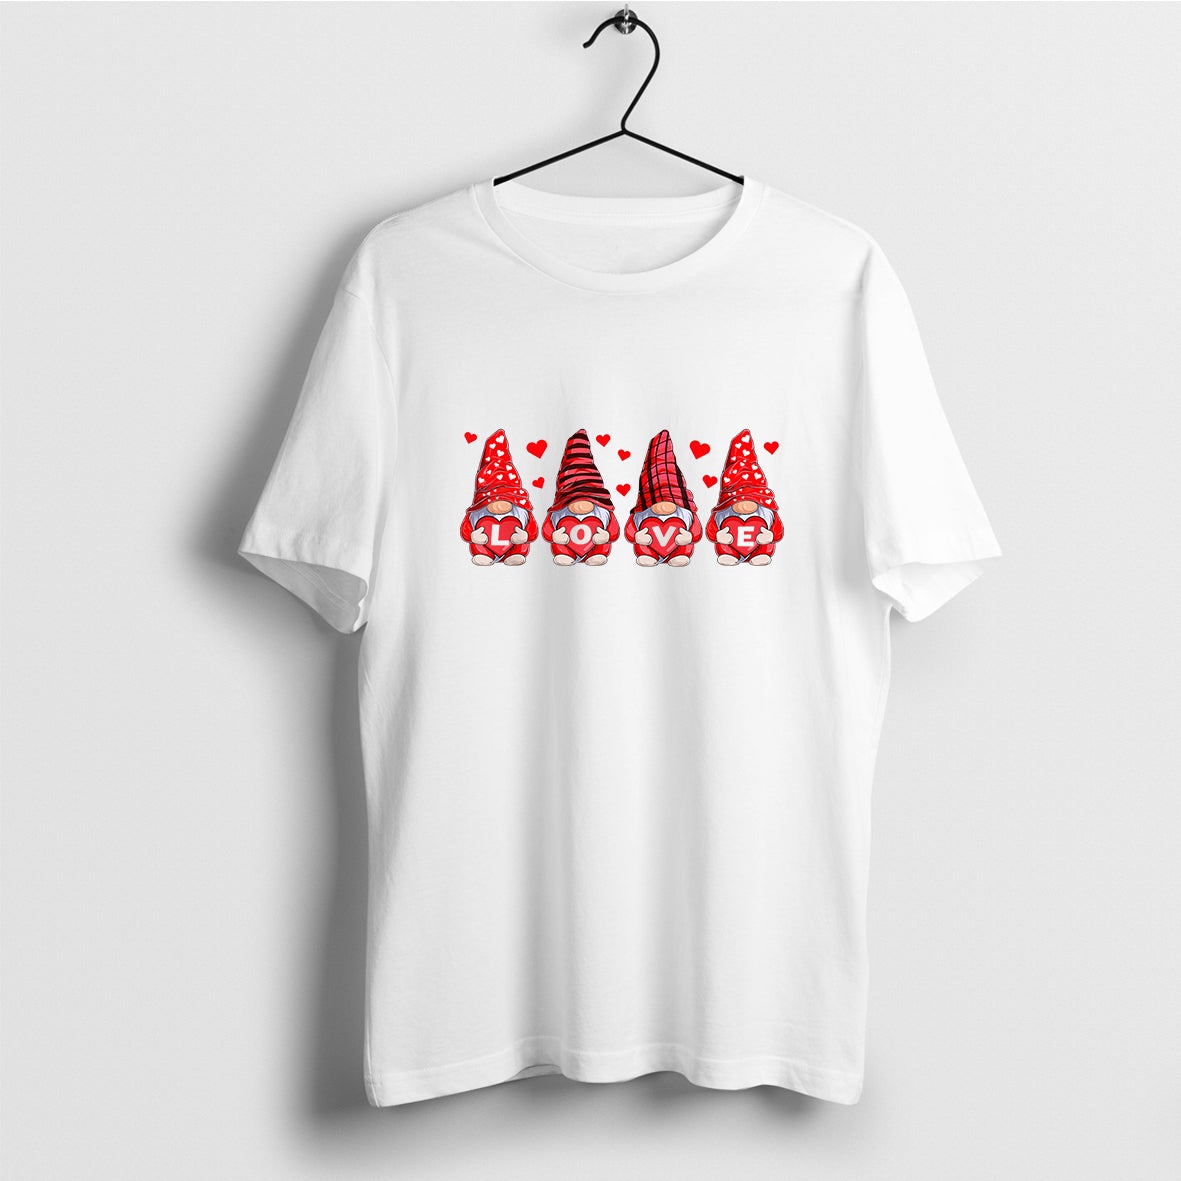 Gnomes Valentine T-Shirt, Heart Shirt, Gnomes Shirt, Cute Valentine Shirt, Valentine Day Gift